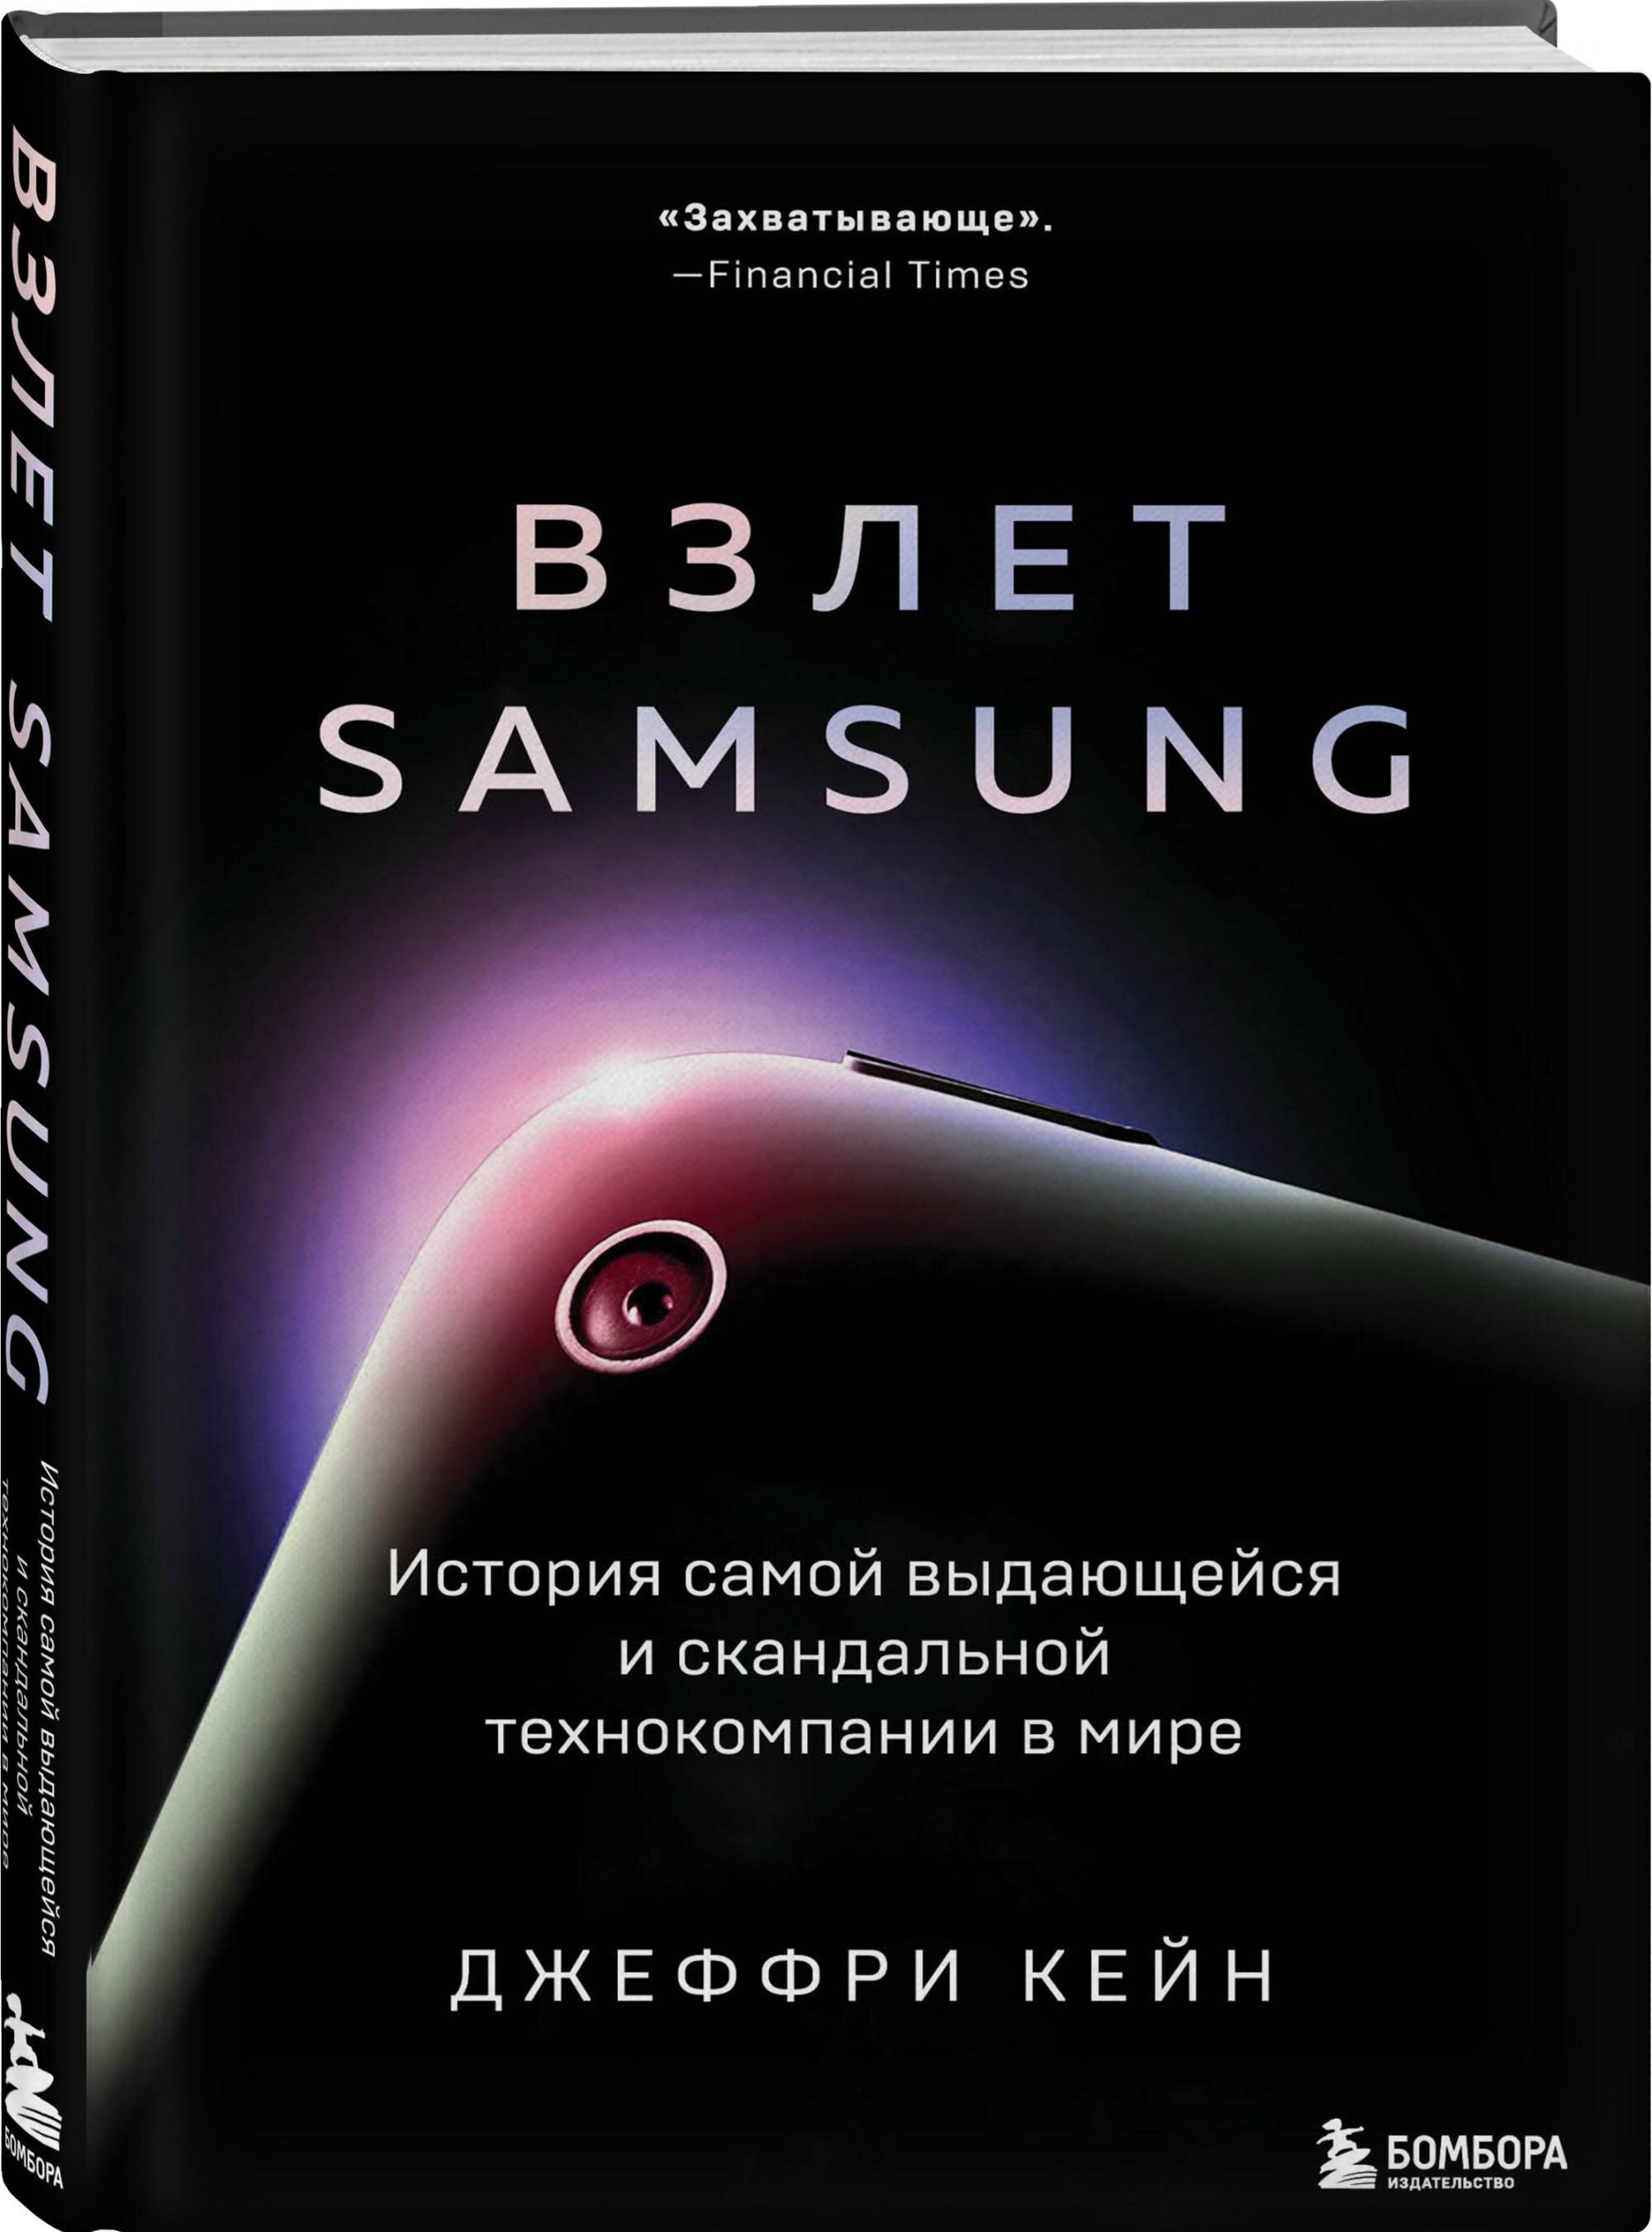 Взлет Samsung. История самой выдающейся и скандальной технокомпании в мире - фото №2